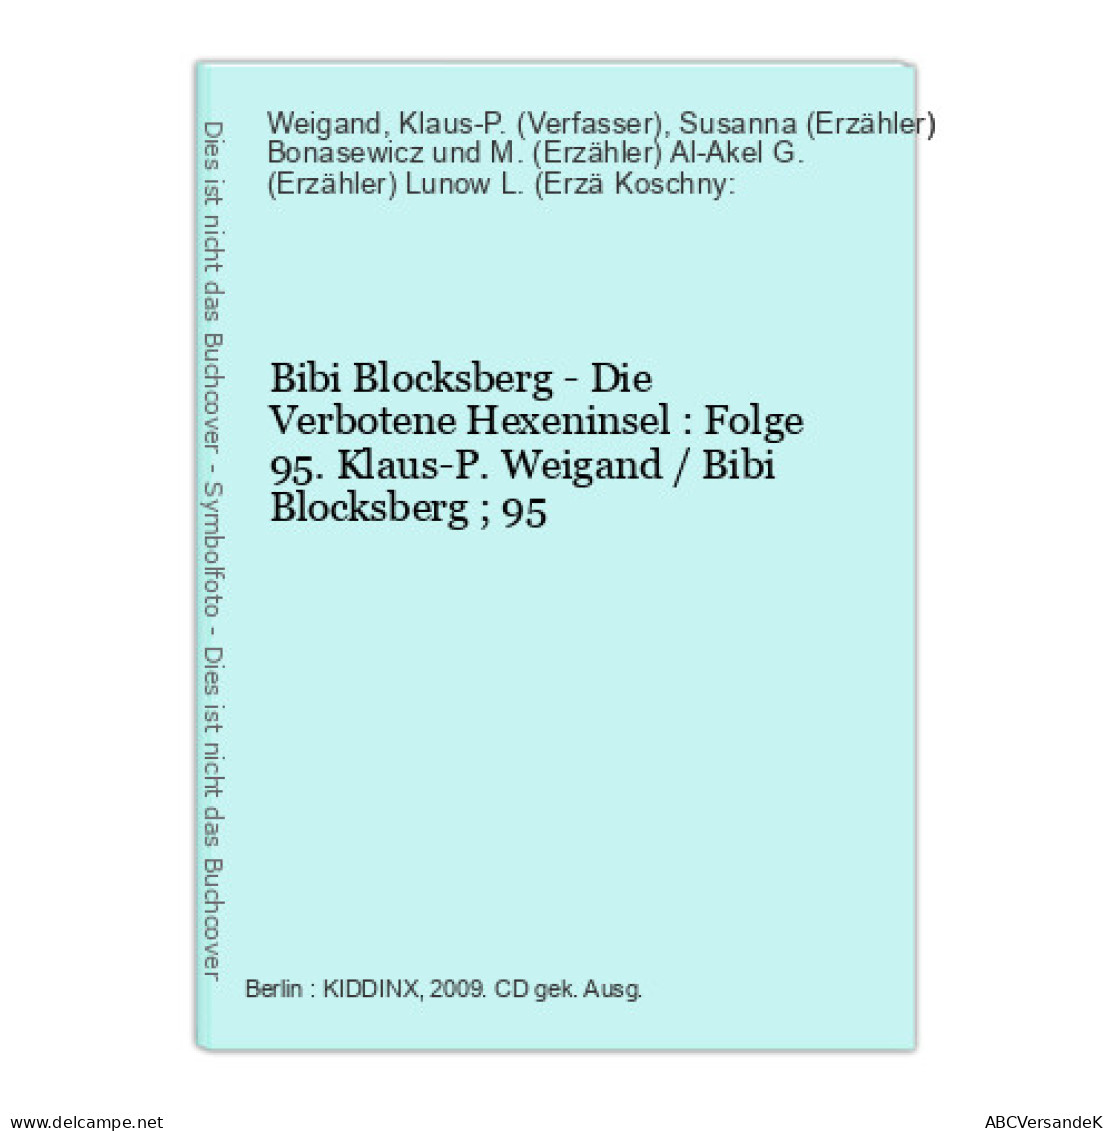 Bibi Blocksberg - Die Verbotene Hexeninsel : Folge 95. - CDs